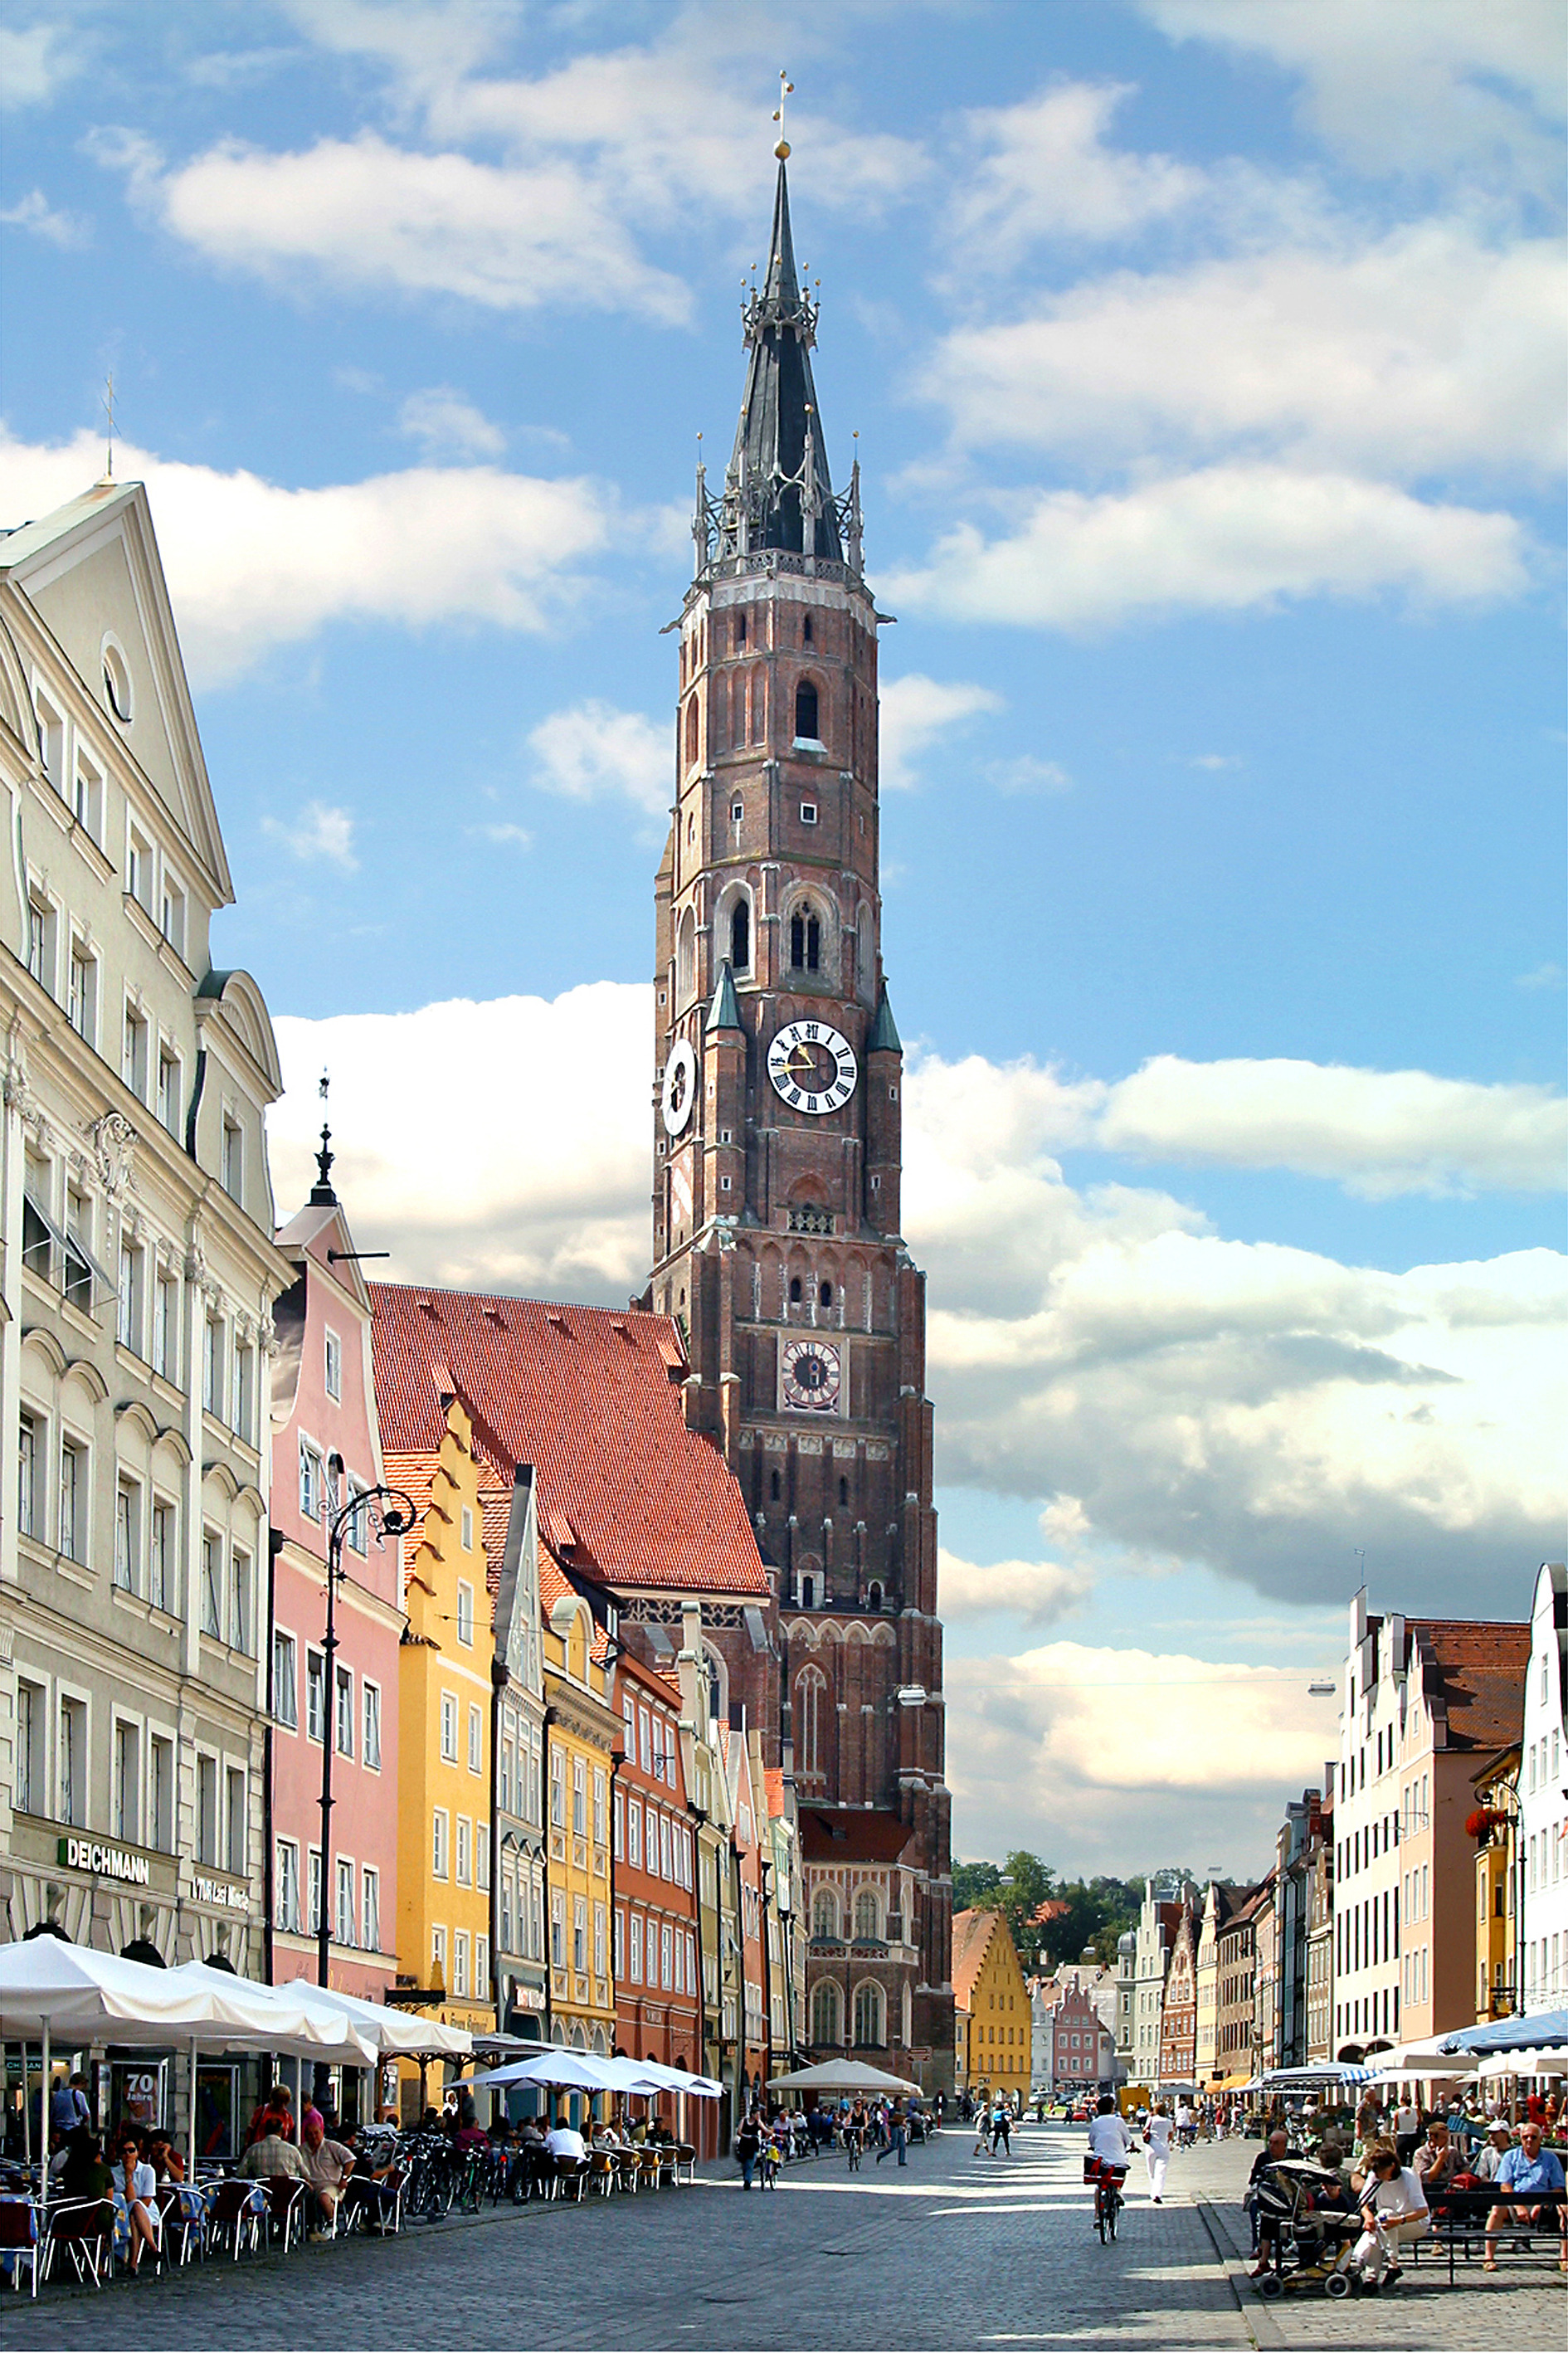 Die Altstadt von Landshut mit der prächtigen Stiftsbasilika Sankt Martin.
